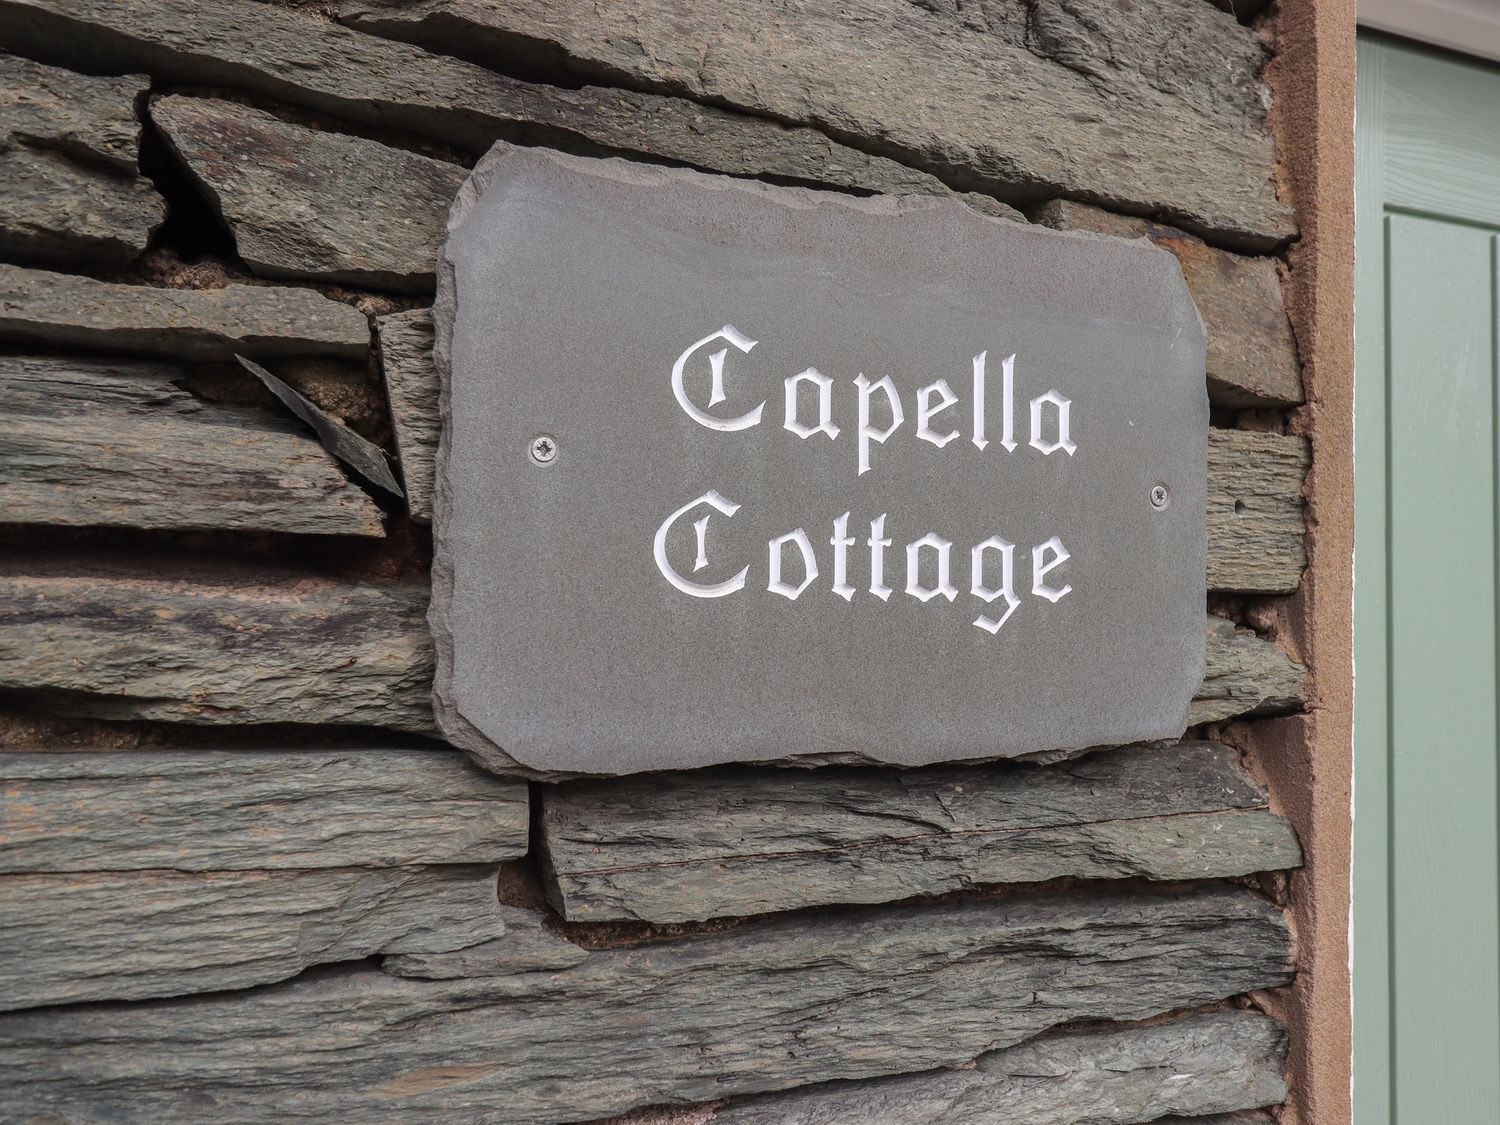 Capella Cottage, Keswick